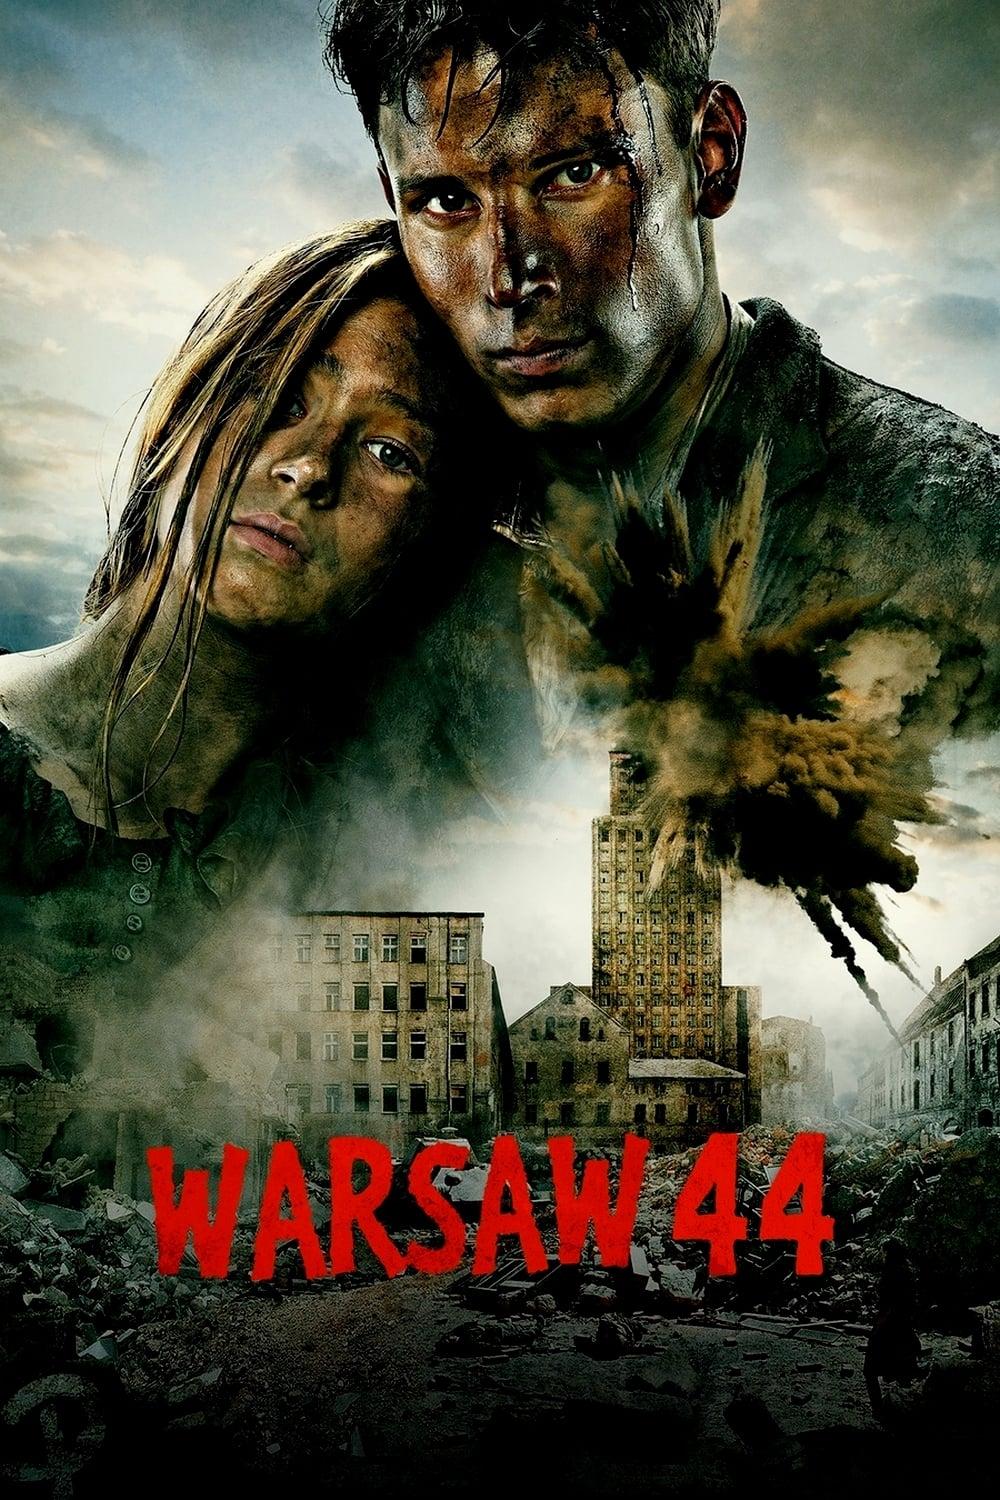 Warsaw 44 poster